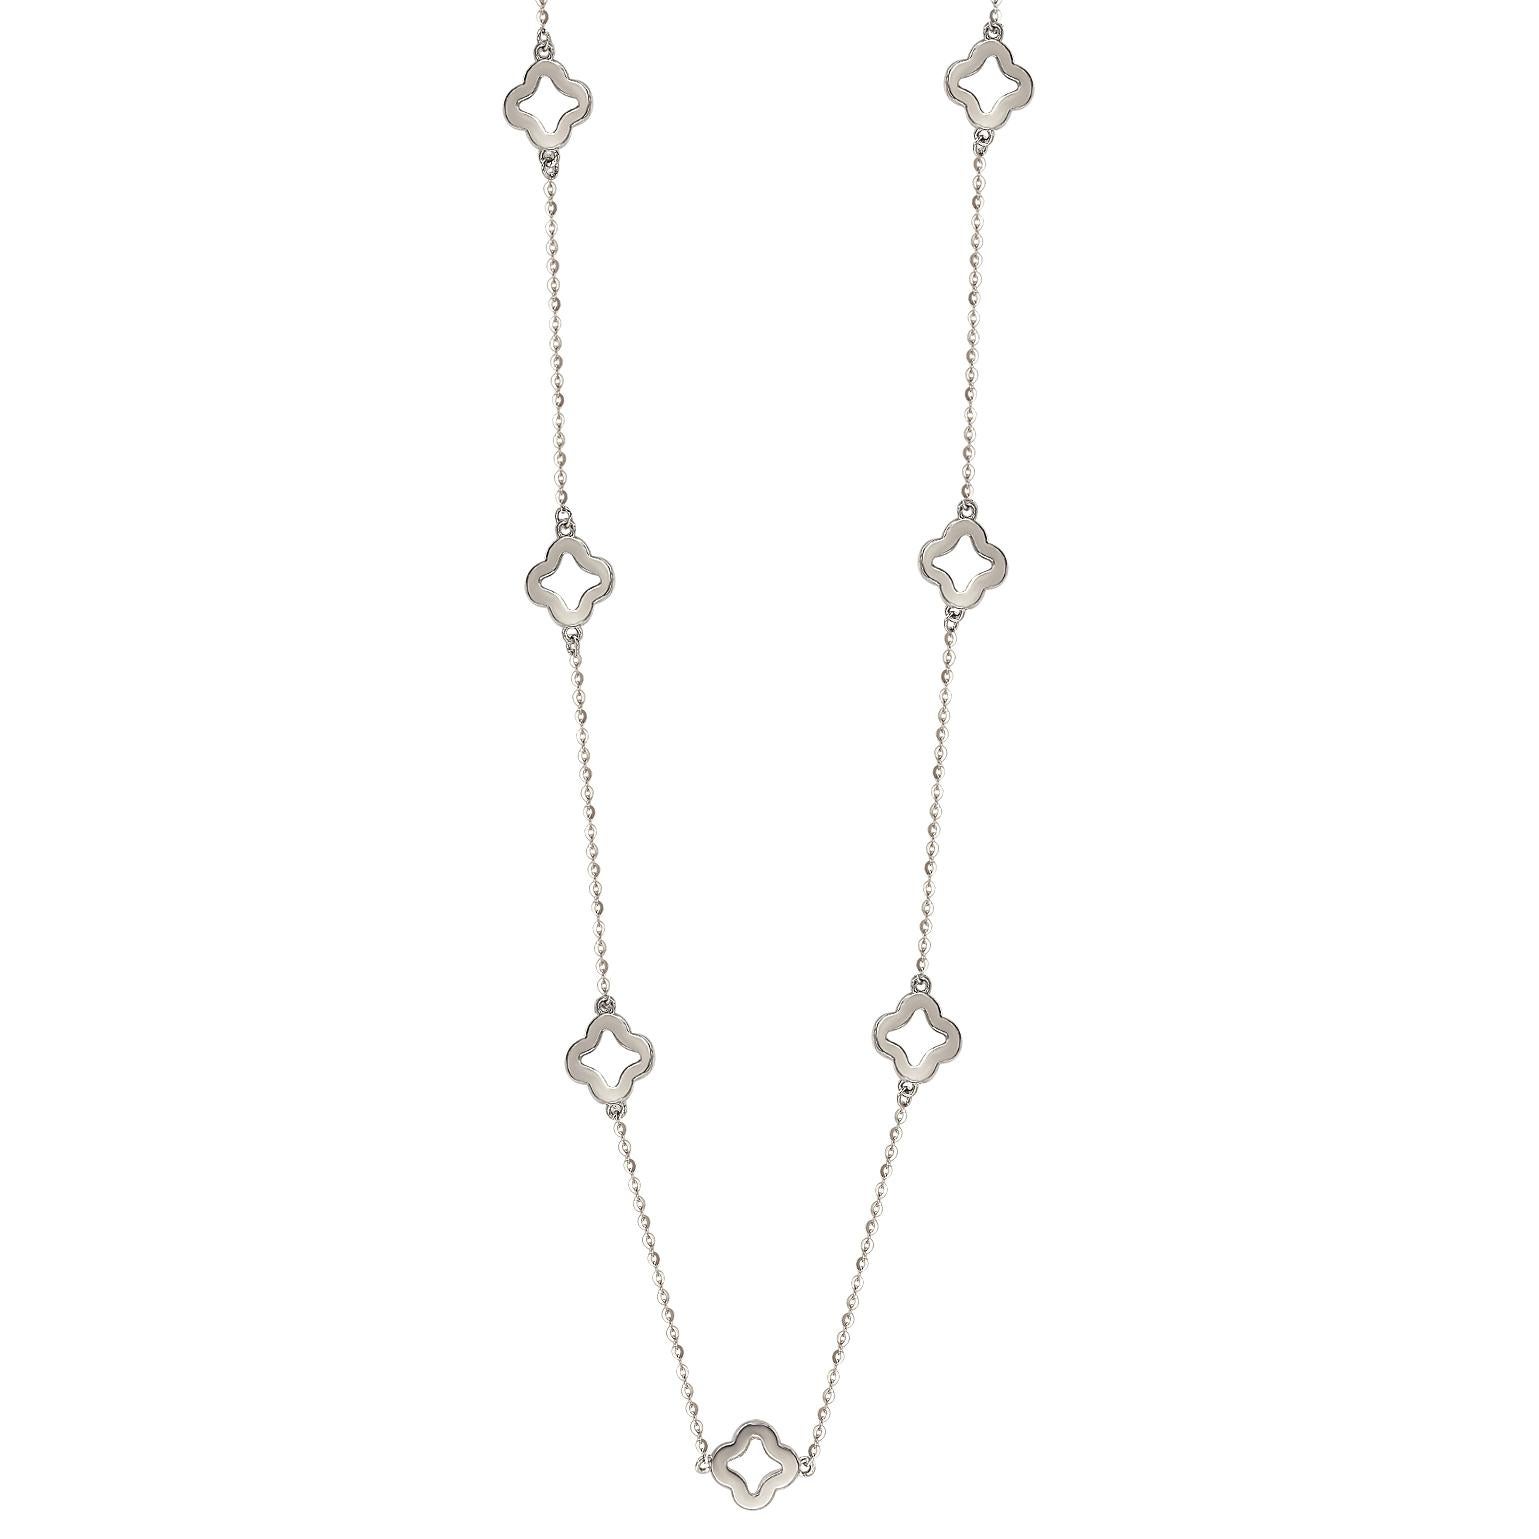 Ce collier unique en forme de trèfle ouvert au mètre de Suzy Levian présente des diamants de taille ronde sur une monture en or blanc 14 carats. Ce magnifique collier contient 126 diamants blancs de 1 mm de diamètre, de taille ronde, pour un total